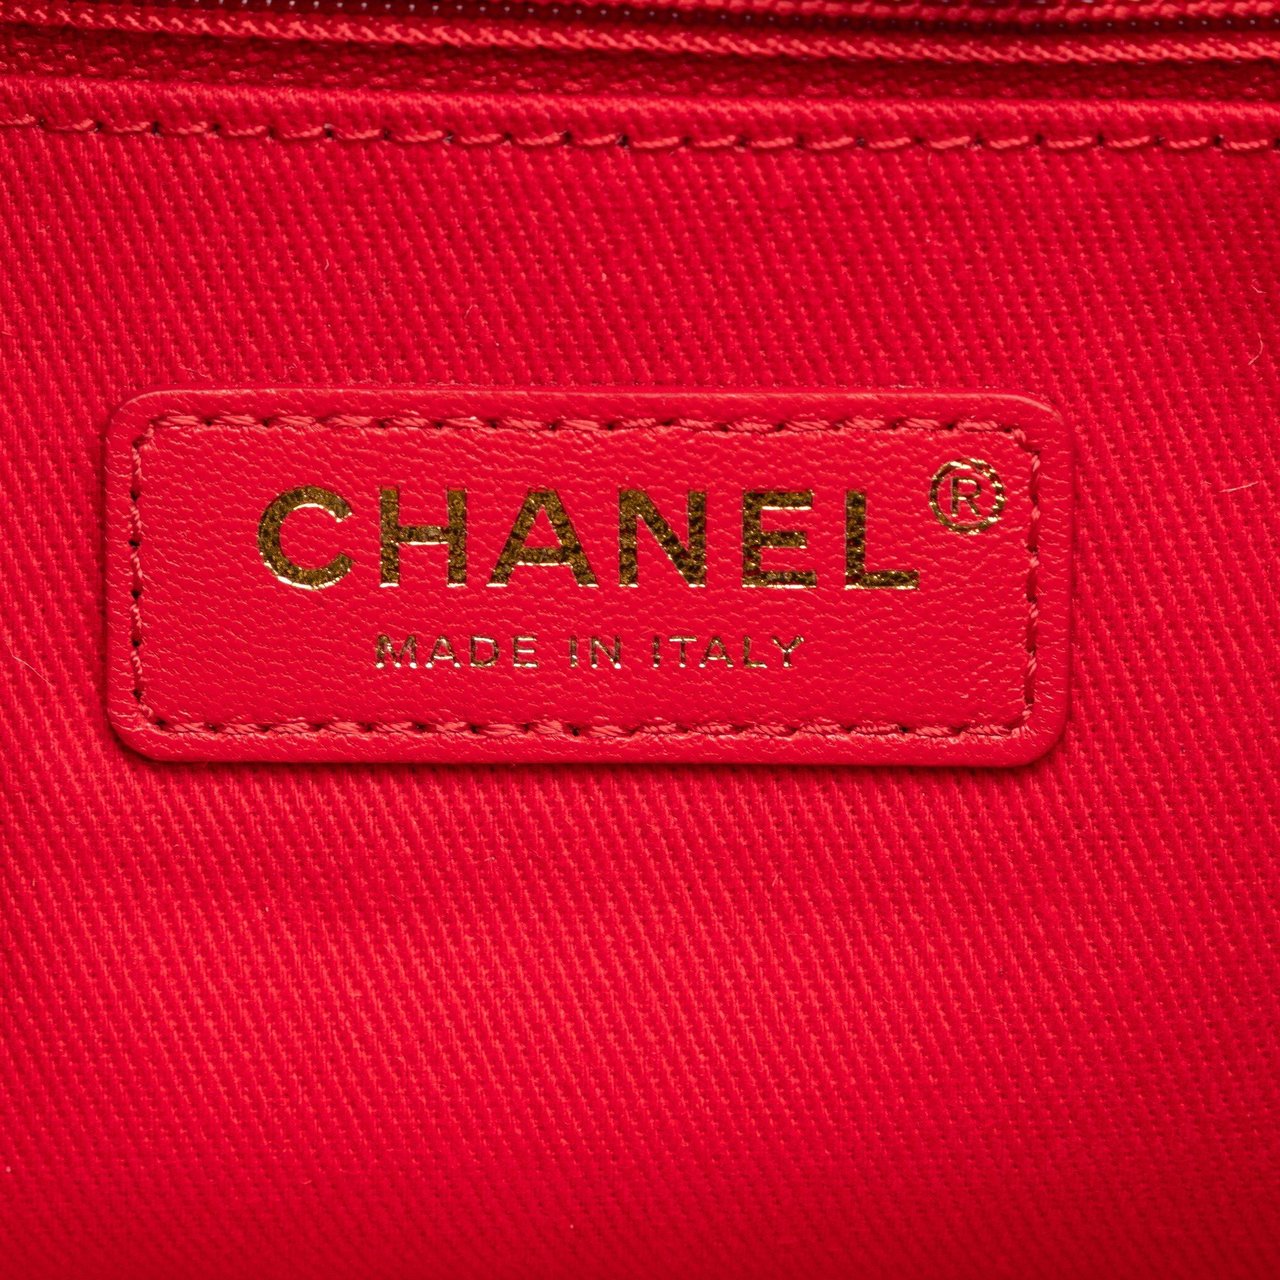 Chanel CC Lambskin Leather Shoulder Bag Zwart